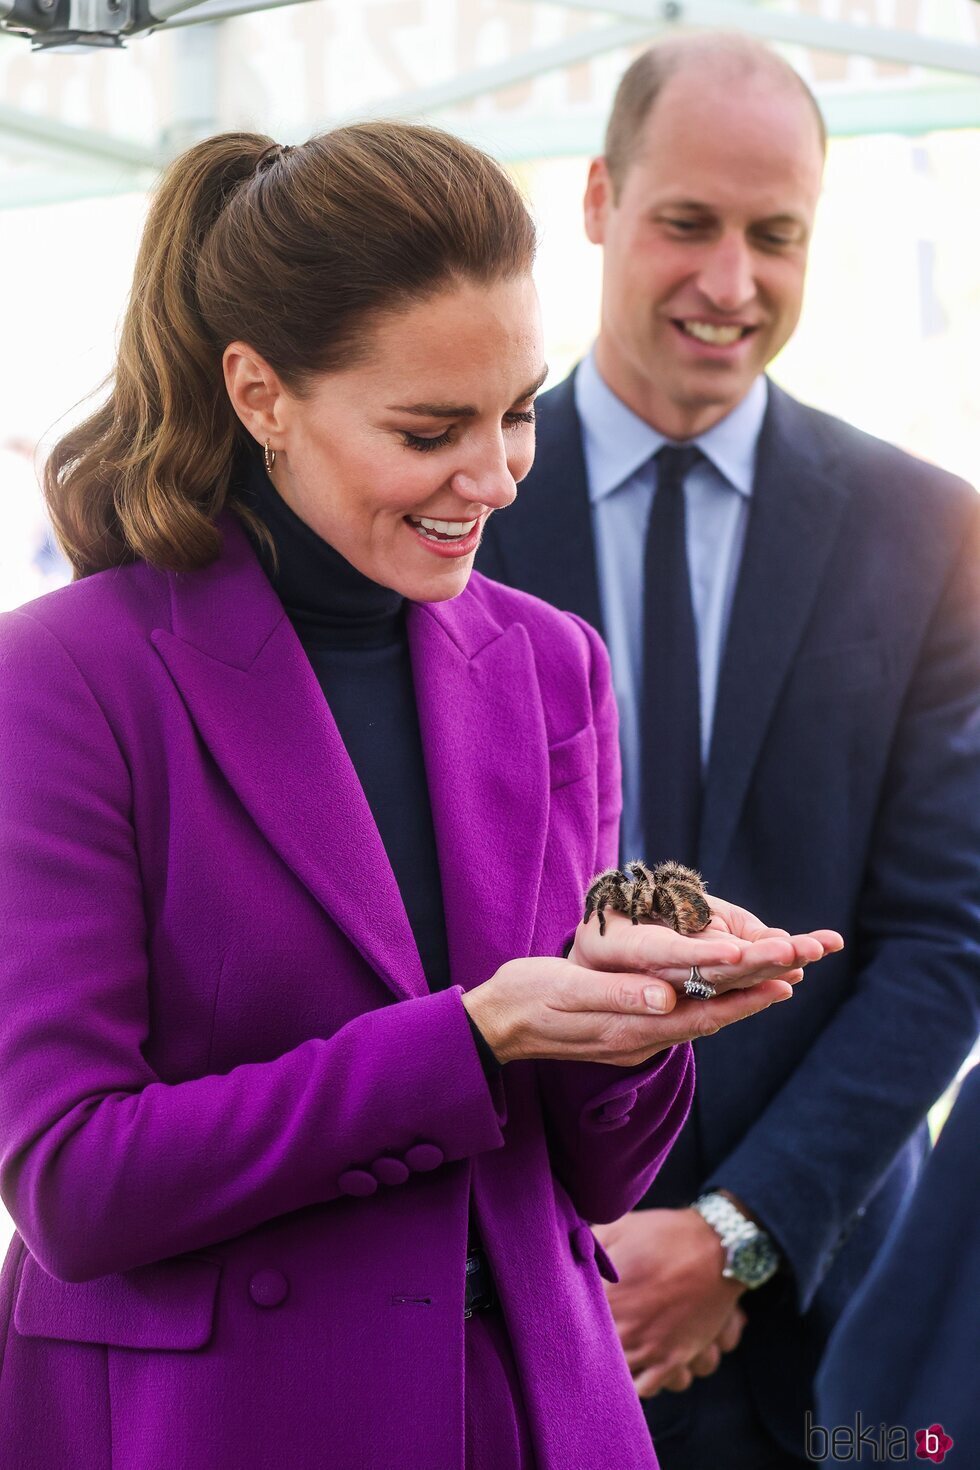 Kate Middleton con la tarántula Charlotte en Irlanda del Norte